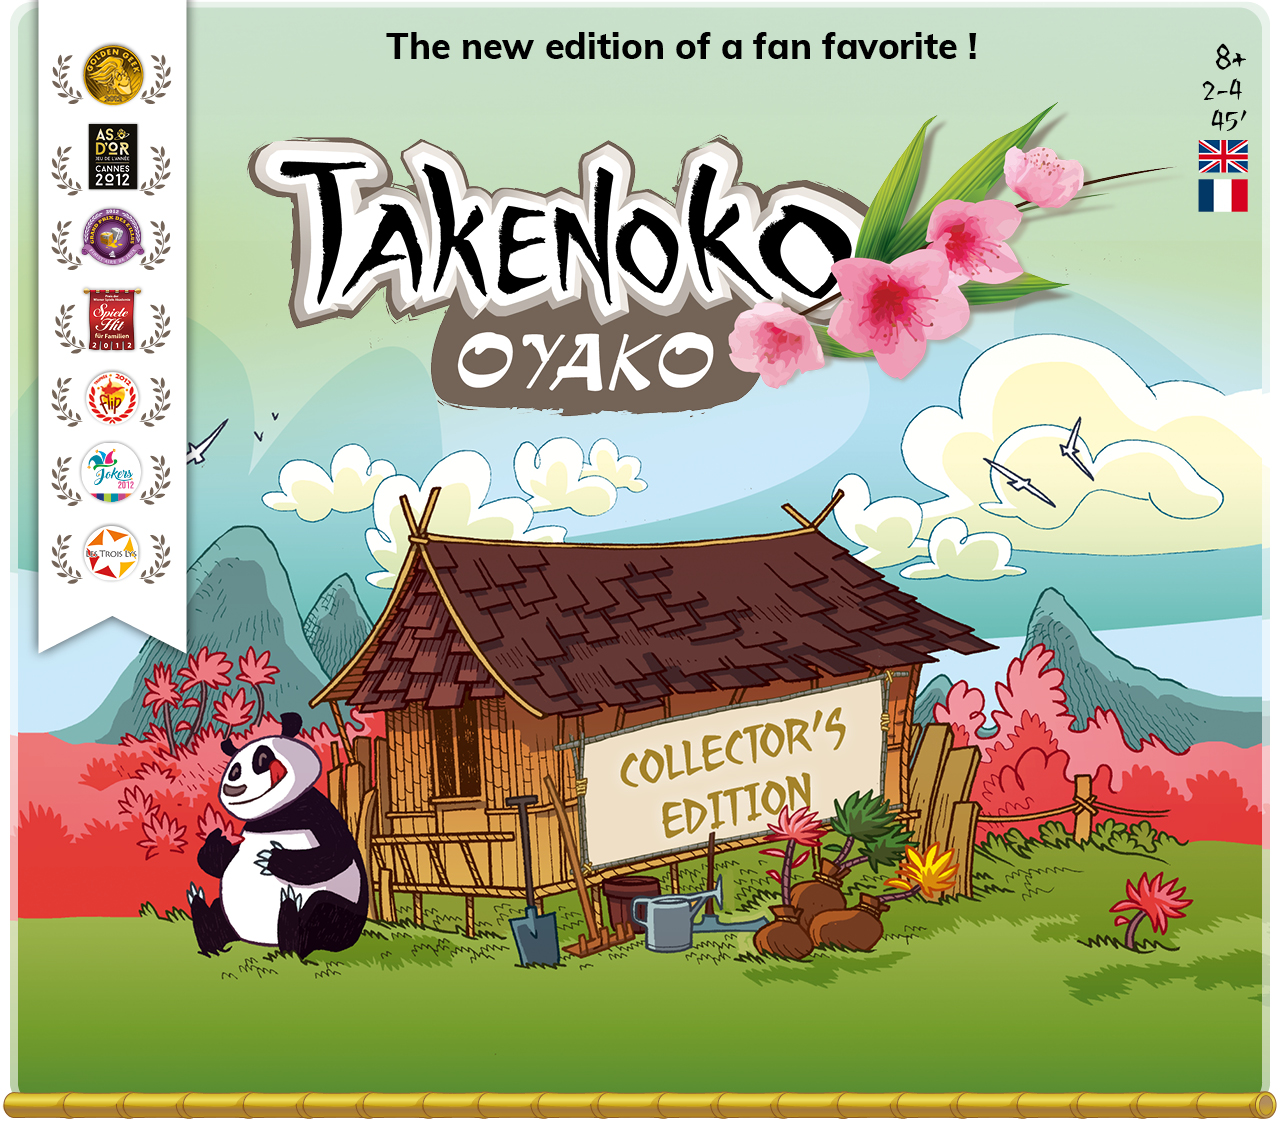 Takenoko Oyako Collector's Edition